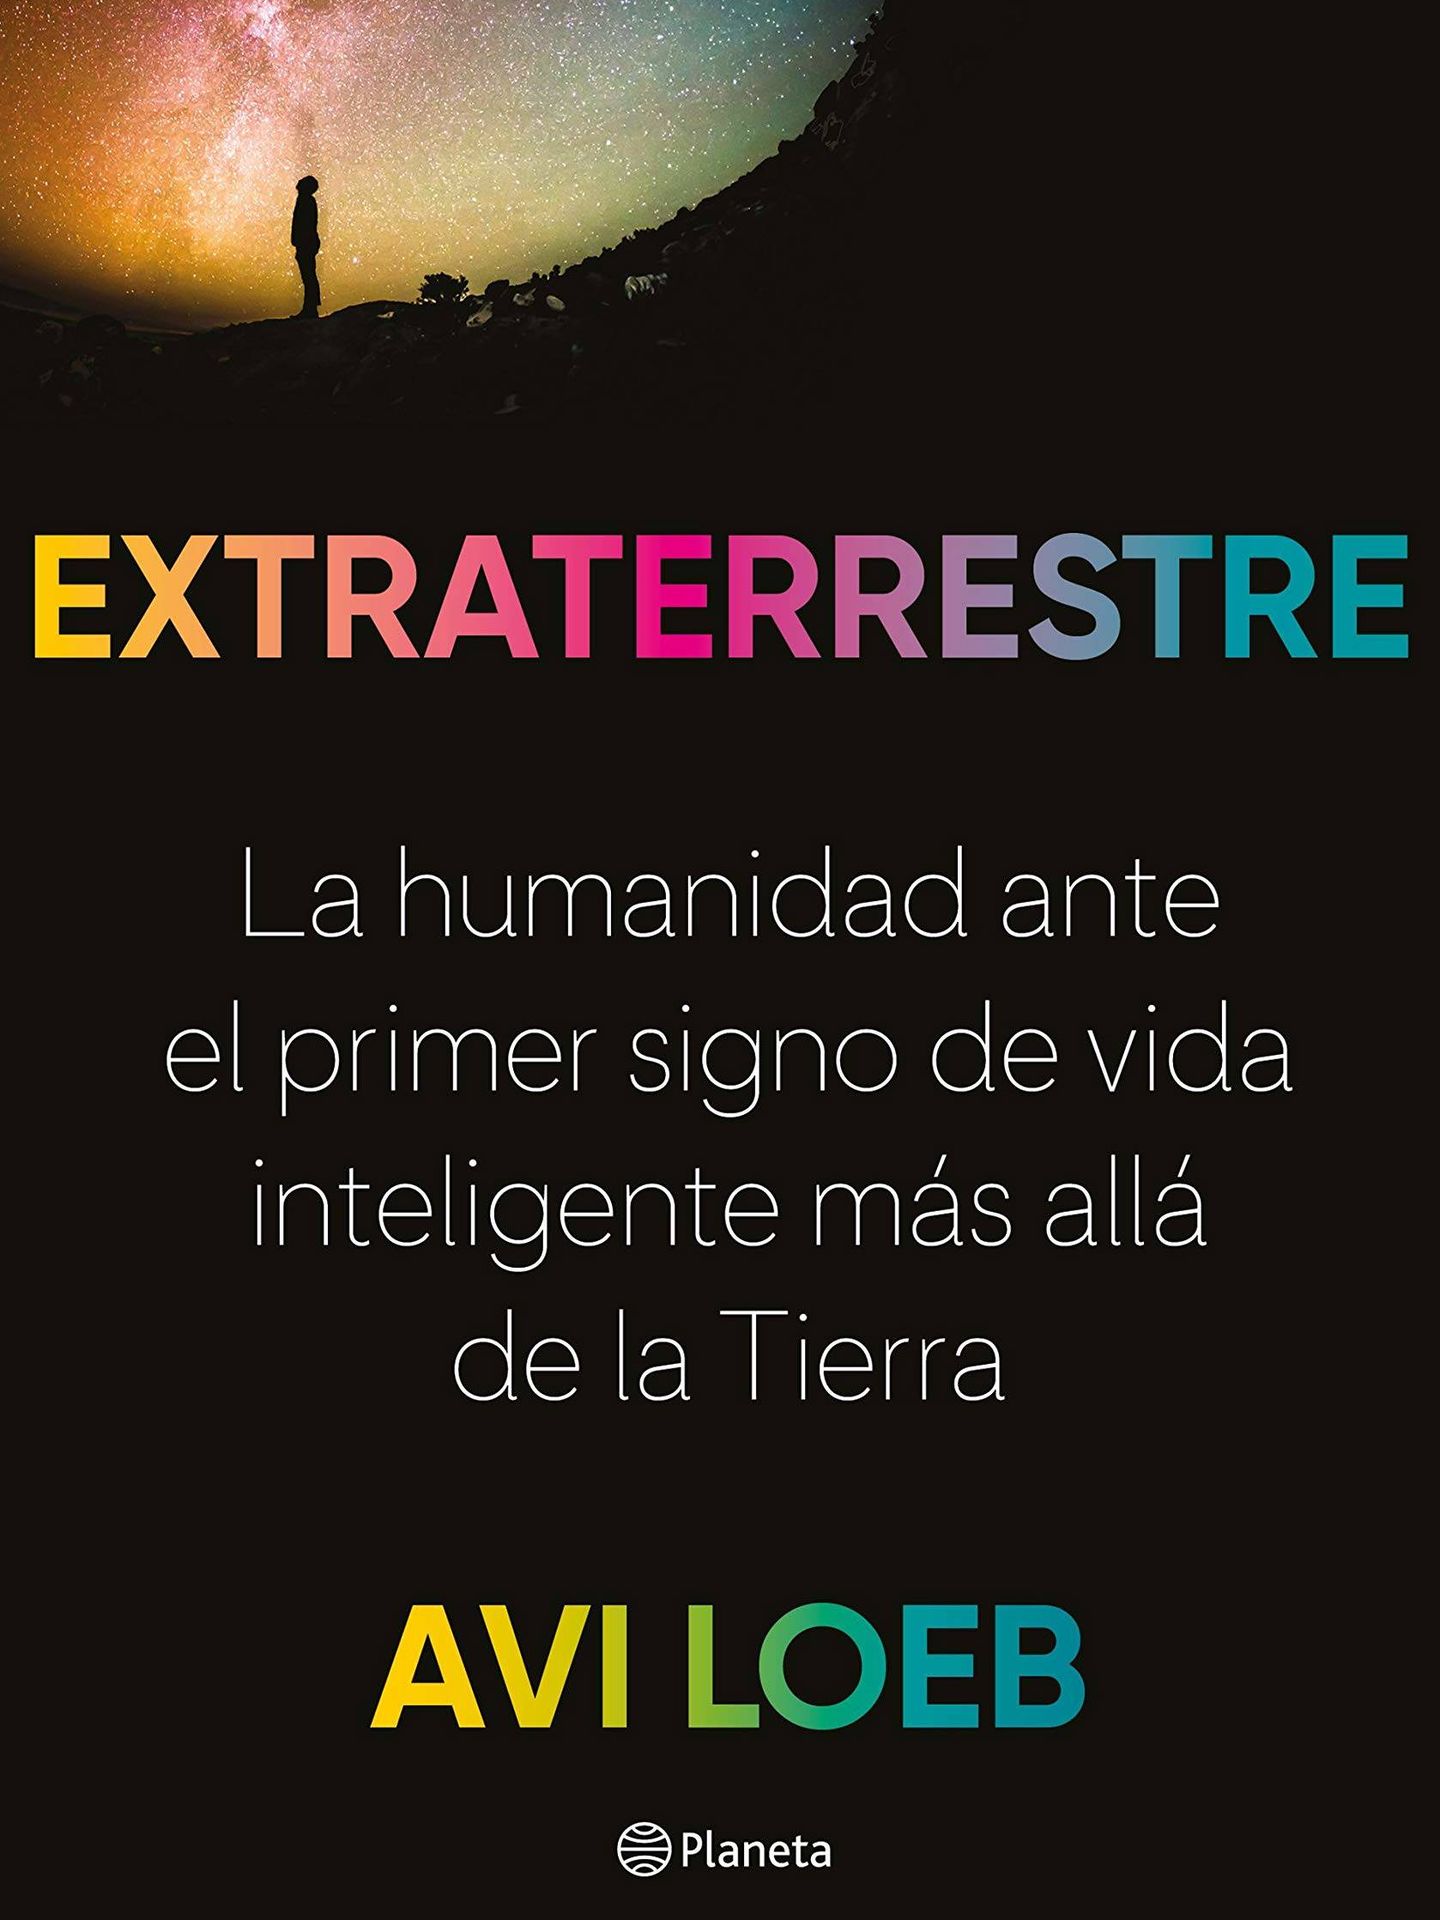 'Extraterrestre'.